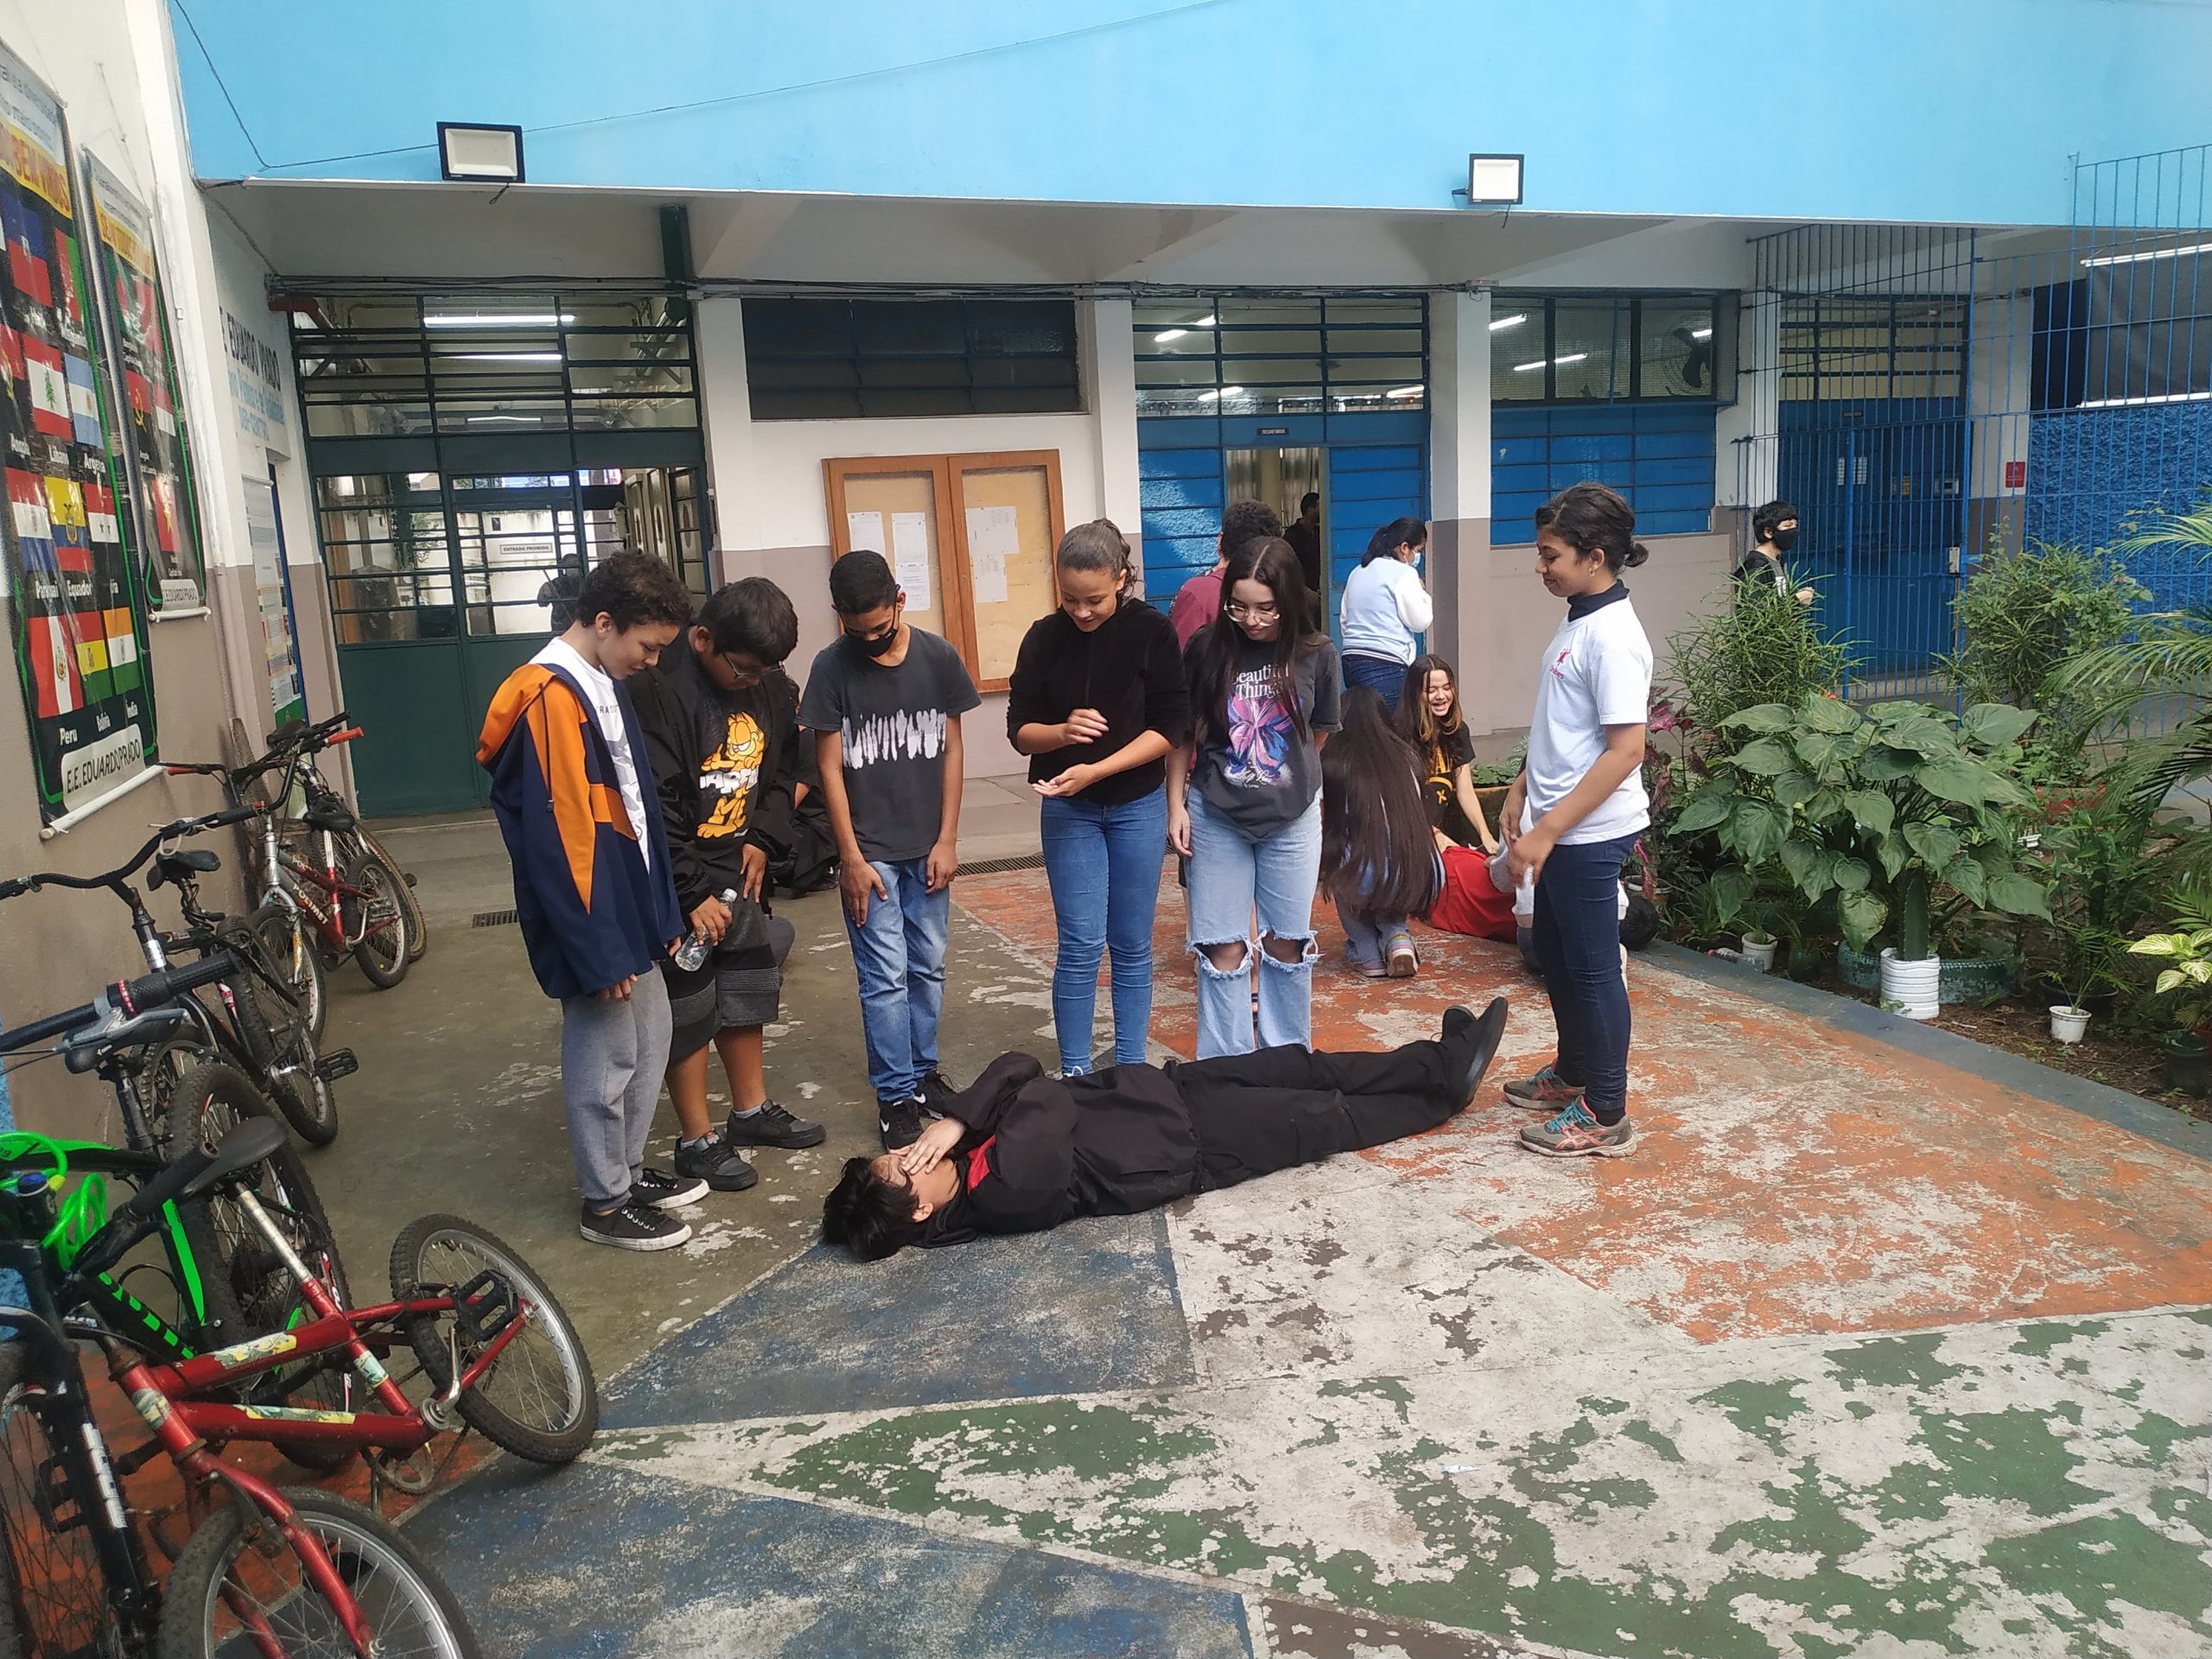 Fotografia colorida mostrando seis estudantes da E.E. Eduardo Prado em pé olhando para um outro estudante deitado no chão